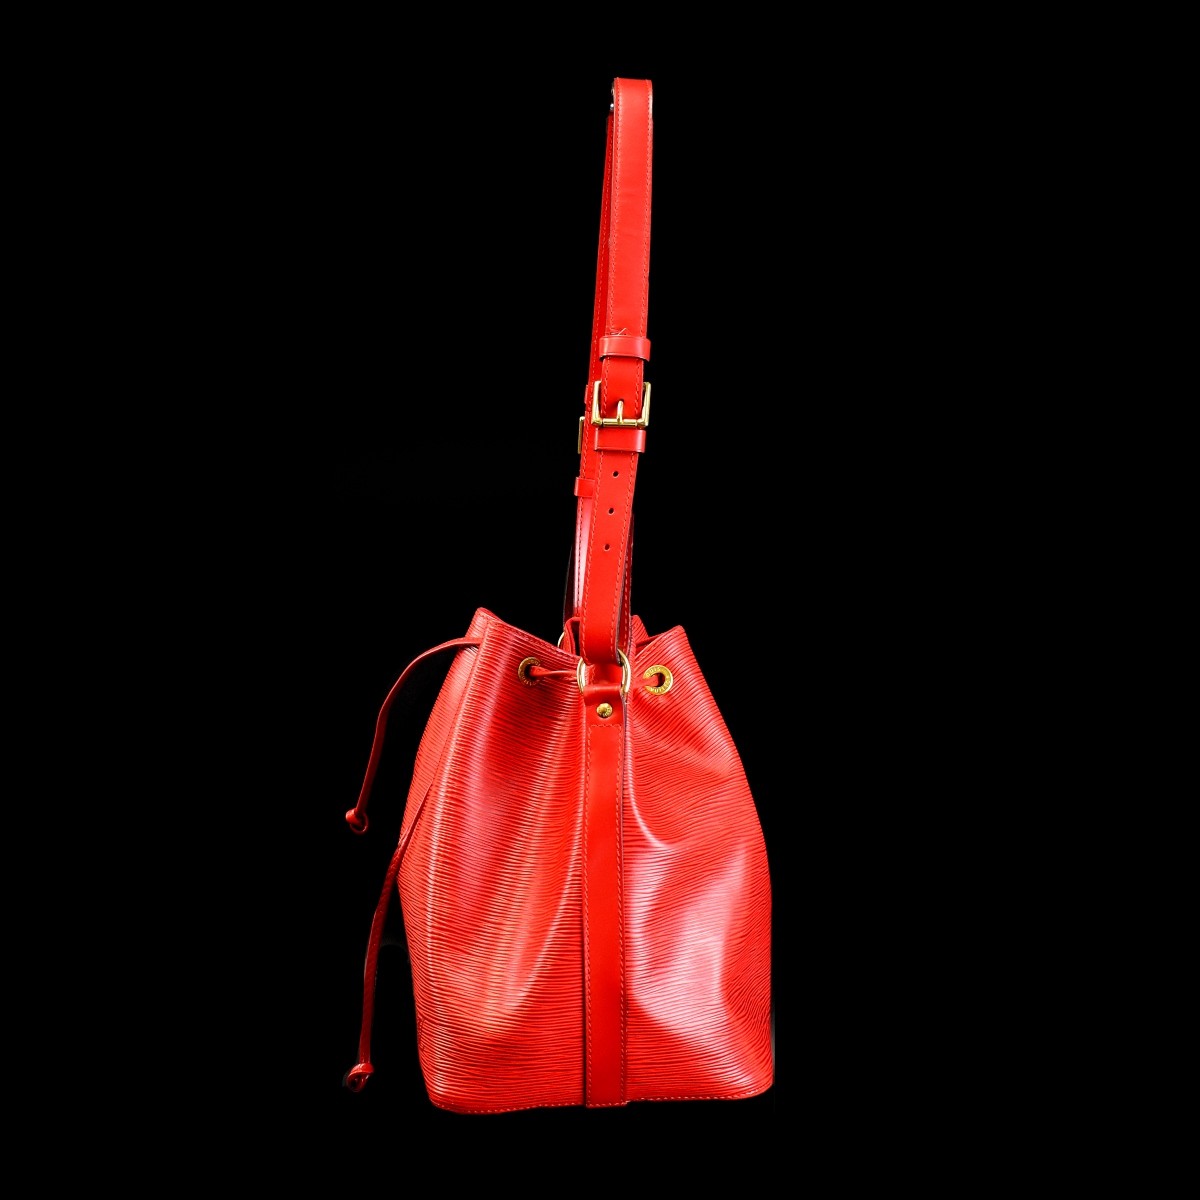 Louis Vuitton Red Leather Epi Noe Shoulder Bag